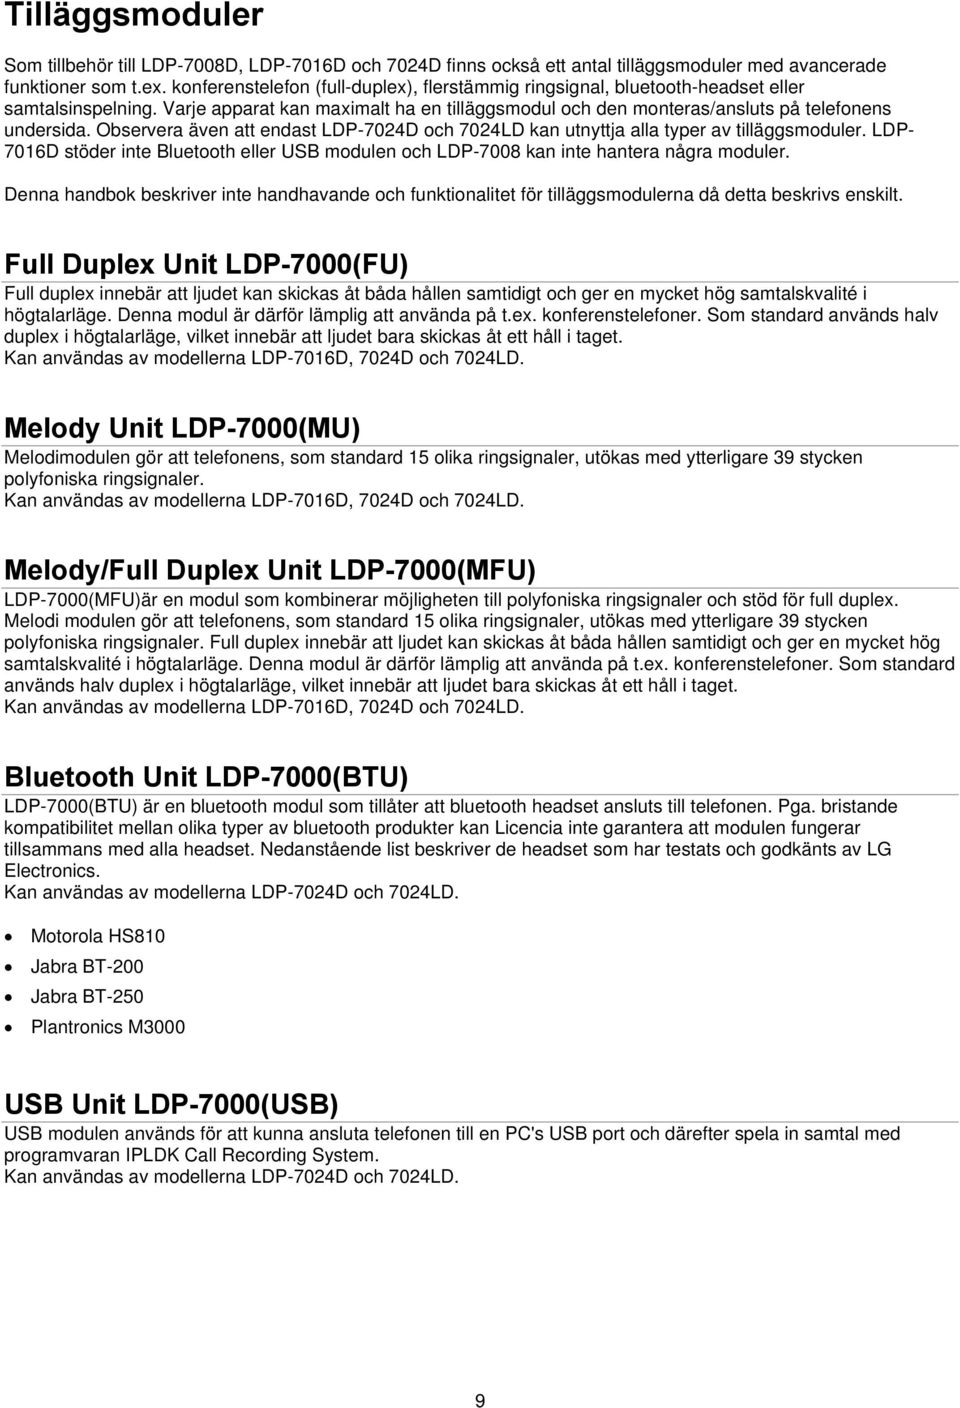 Observera även att endast LDP-7024D och 7024LD kan utnyttja alla typer av tilläggsmoduler. LDP- 7016D stöder inte Bluetooth eller USB modulen och LDP-7008 kan inte hantera några moduler.